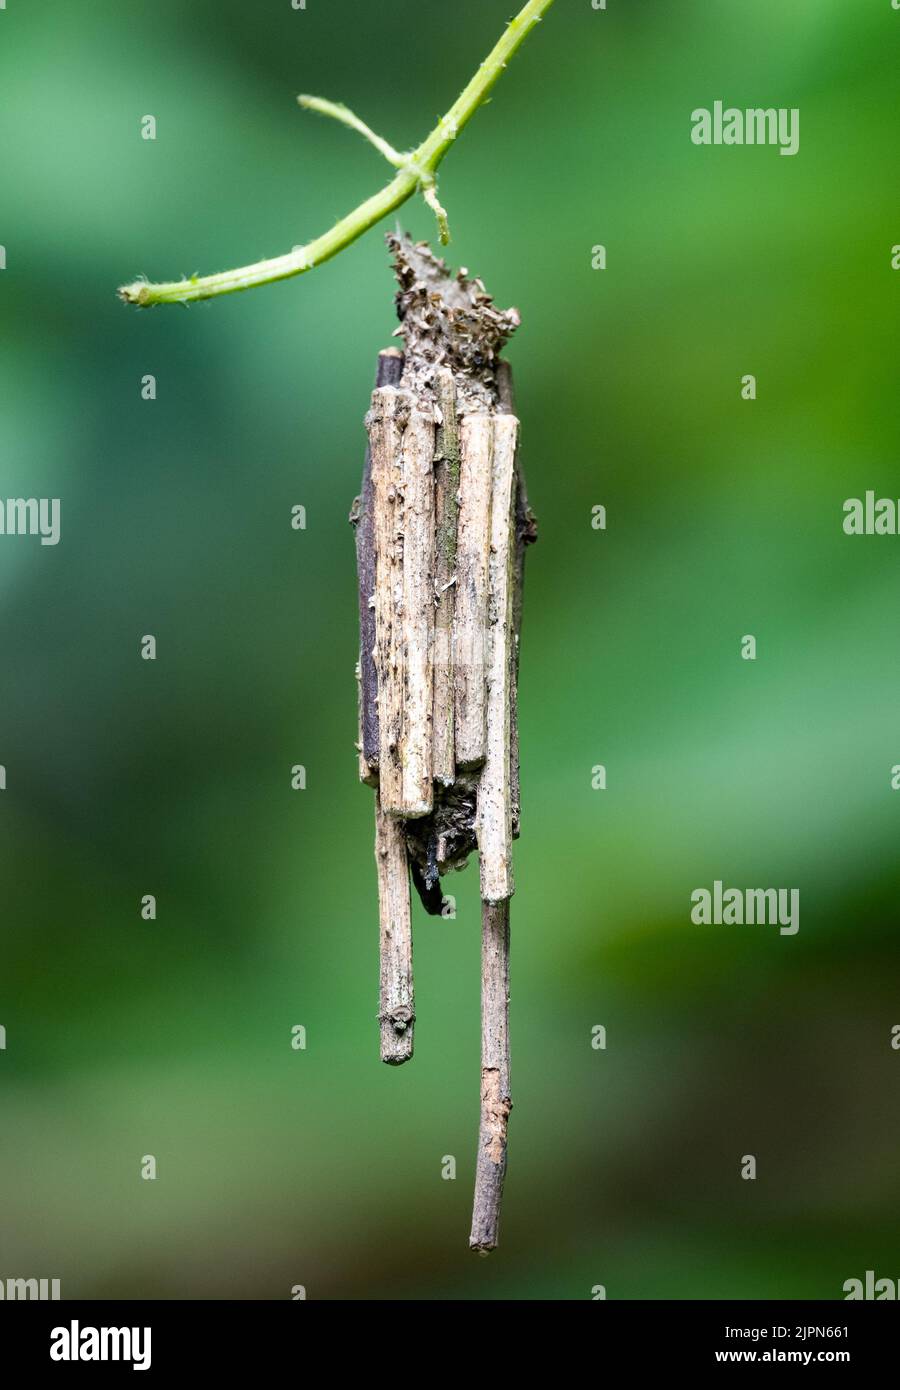 Bagworm Moth larvae, famiglia Psychidae, costruito bozzolo con bastoni incollati insieme alla seta. Sulawesi, Indonesia. Foto Stock